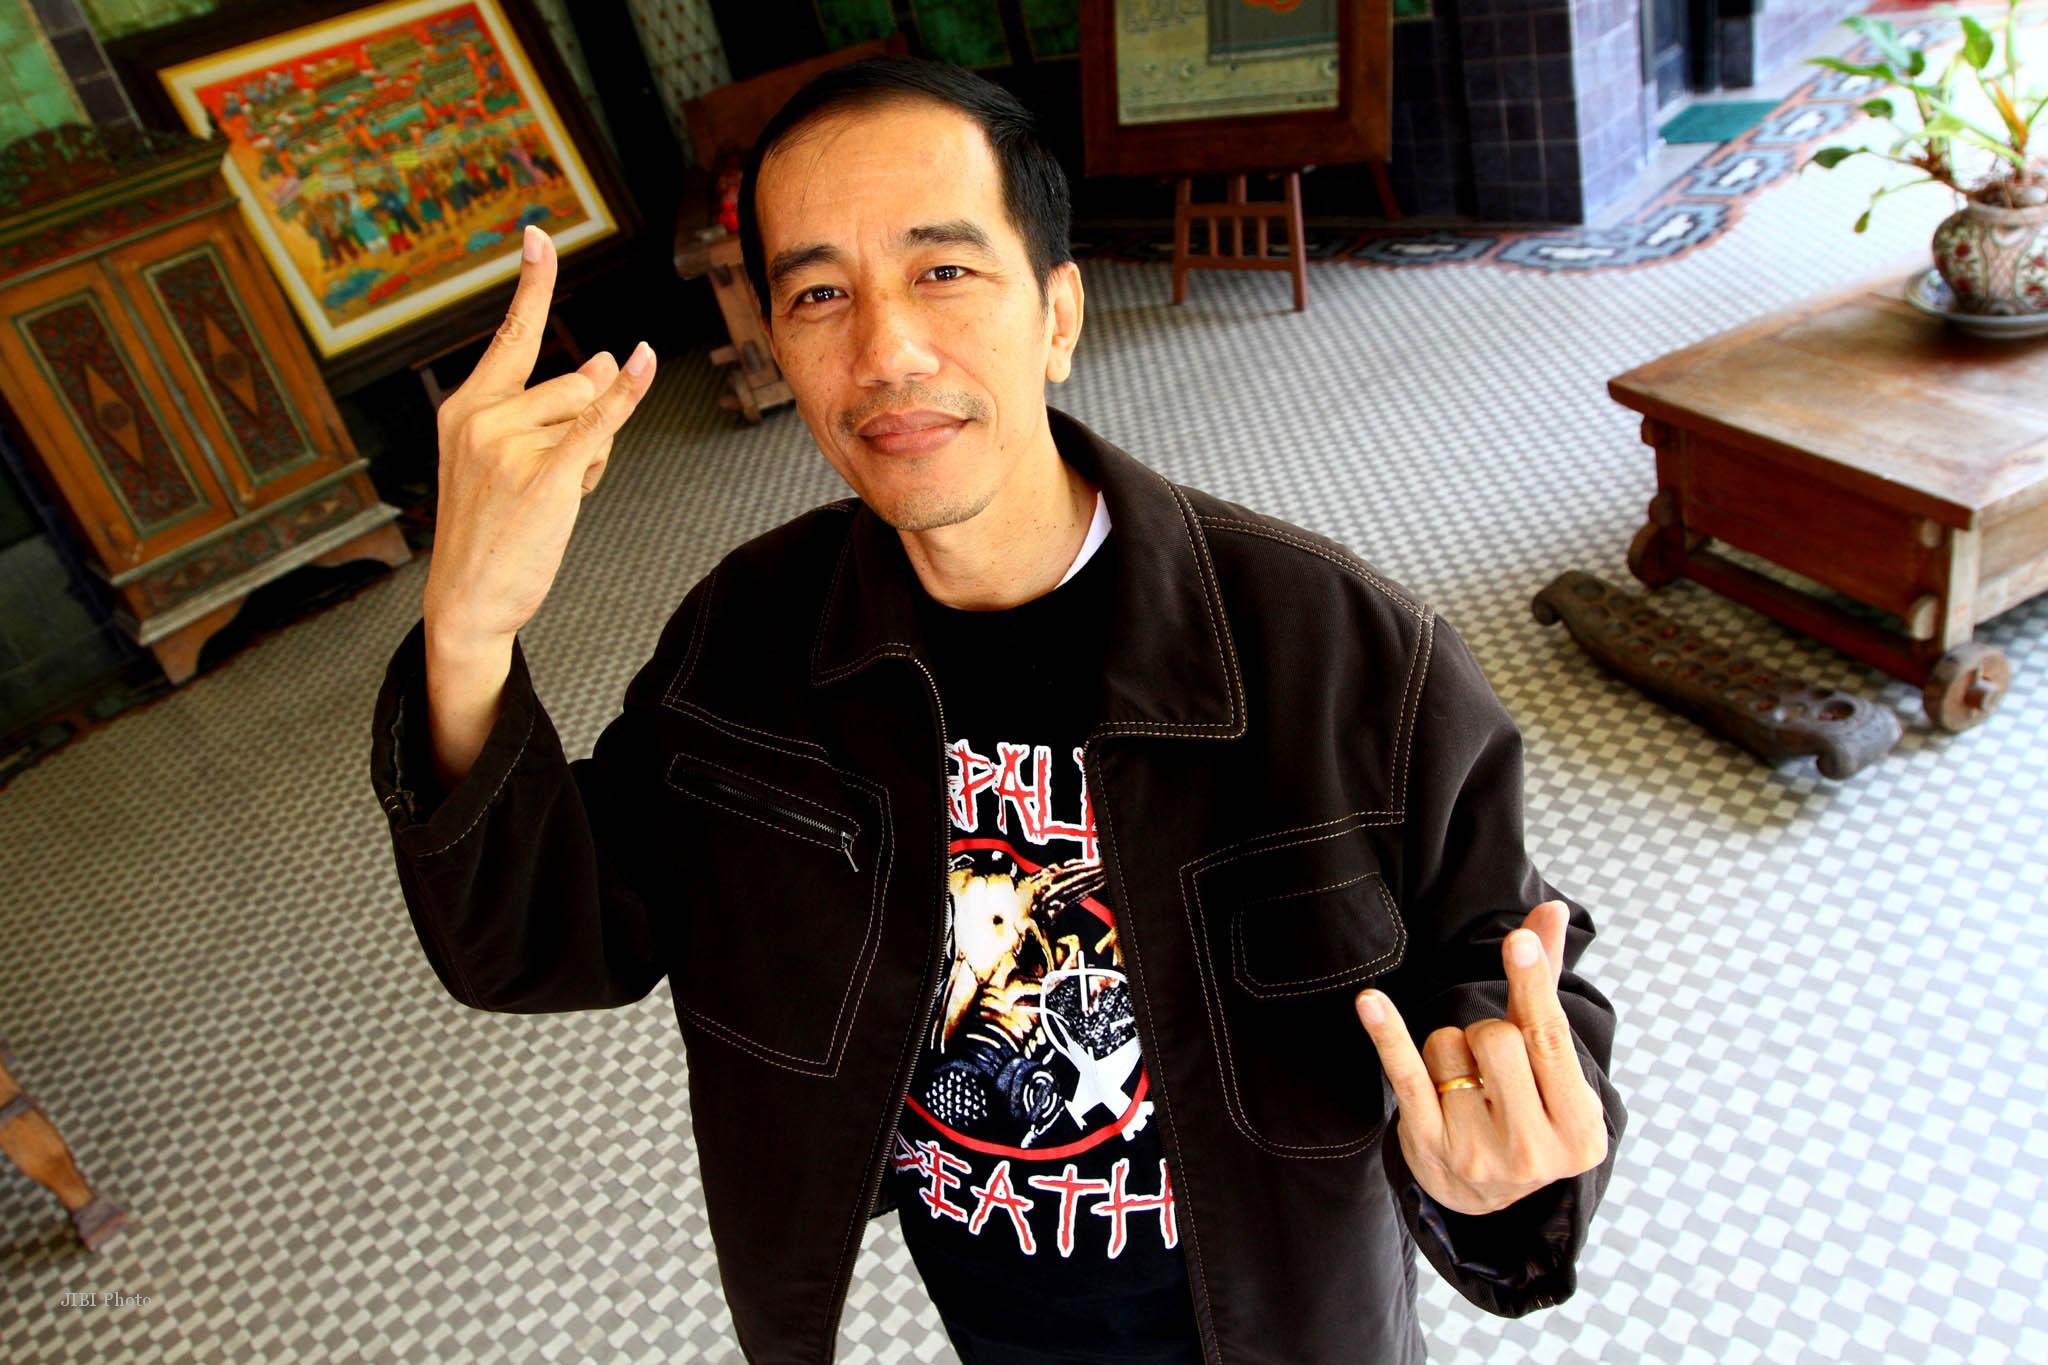 Kemenangan Jokowi  Adalah Kemenangan Golongan Minoritas